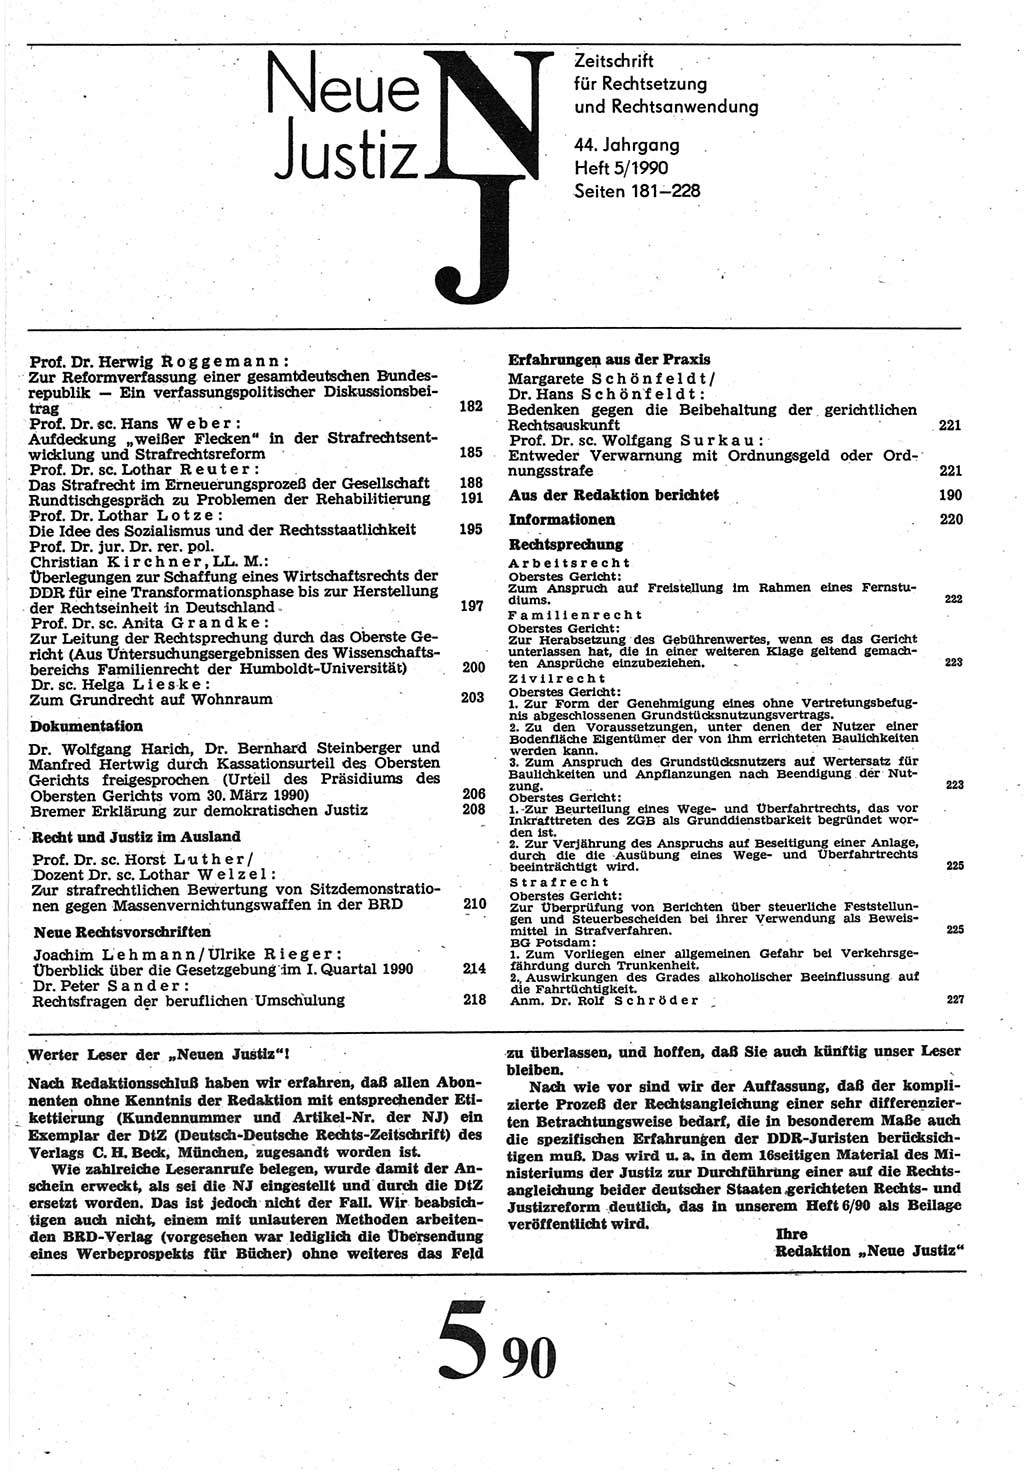 Neue Justiz (NJ), Zeitschrift für Rechtsetzung und Rechtsanwendung [Deutsche Demokratische Republik (DDR)], 44. Jahrgang 1990, Seite 181 (NJ DDR 1990, S. 181)